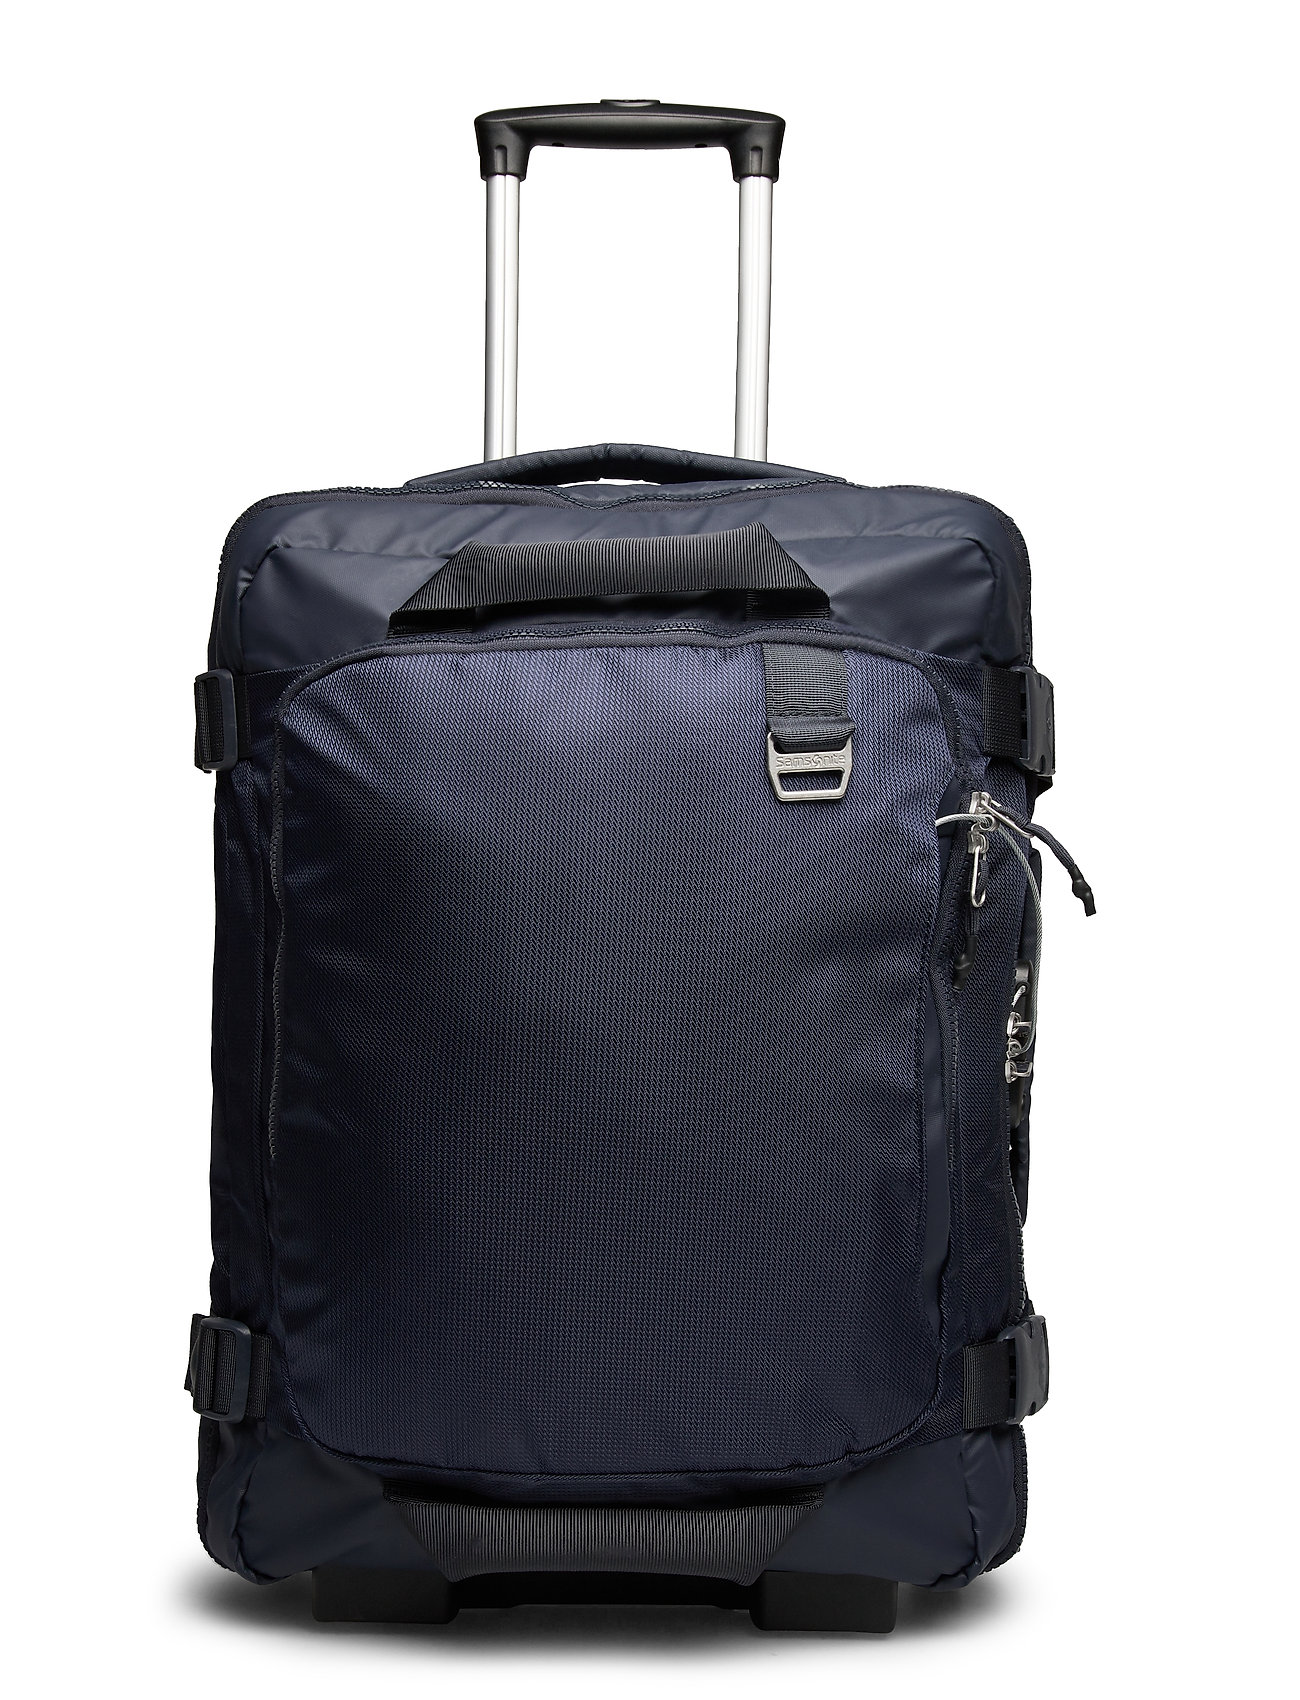 55 Samsonite Backpack/wl - Suitcases Midtown